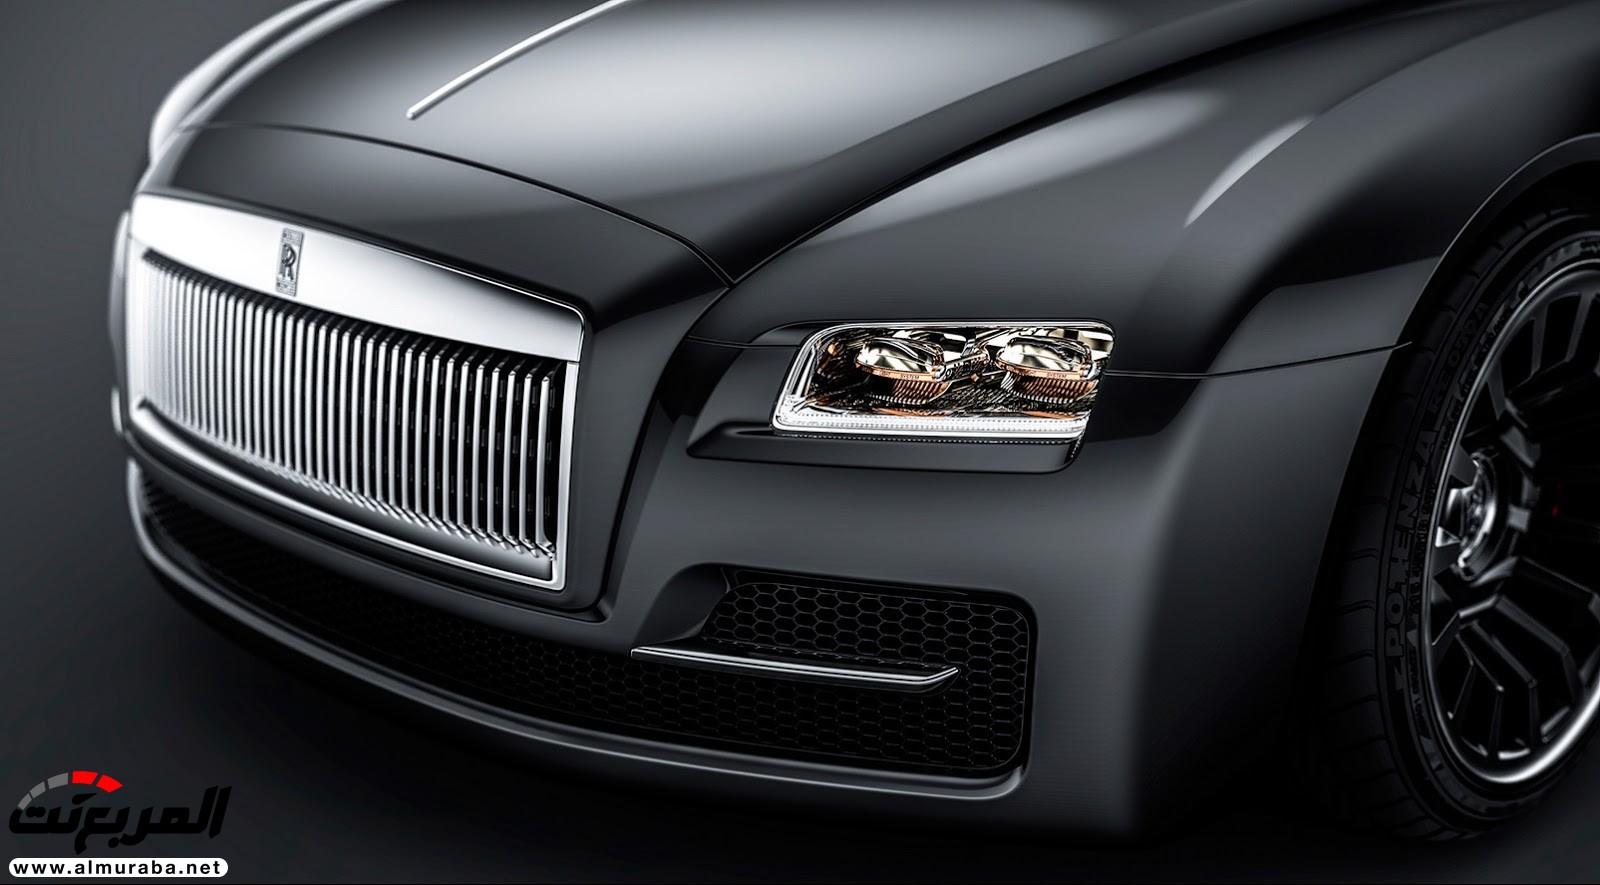 "صور افتراضية" لما يمكن أن تبدو عليه "رولز رويس" رايث كوبيه 2020 Rolls-Royce Wraith Coupe 73